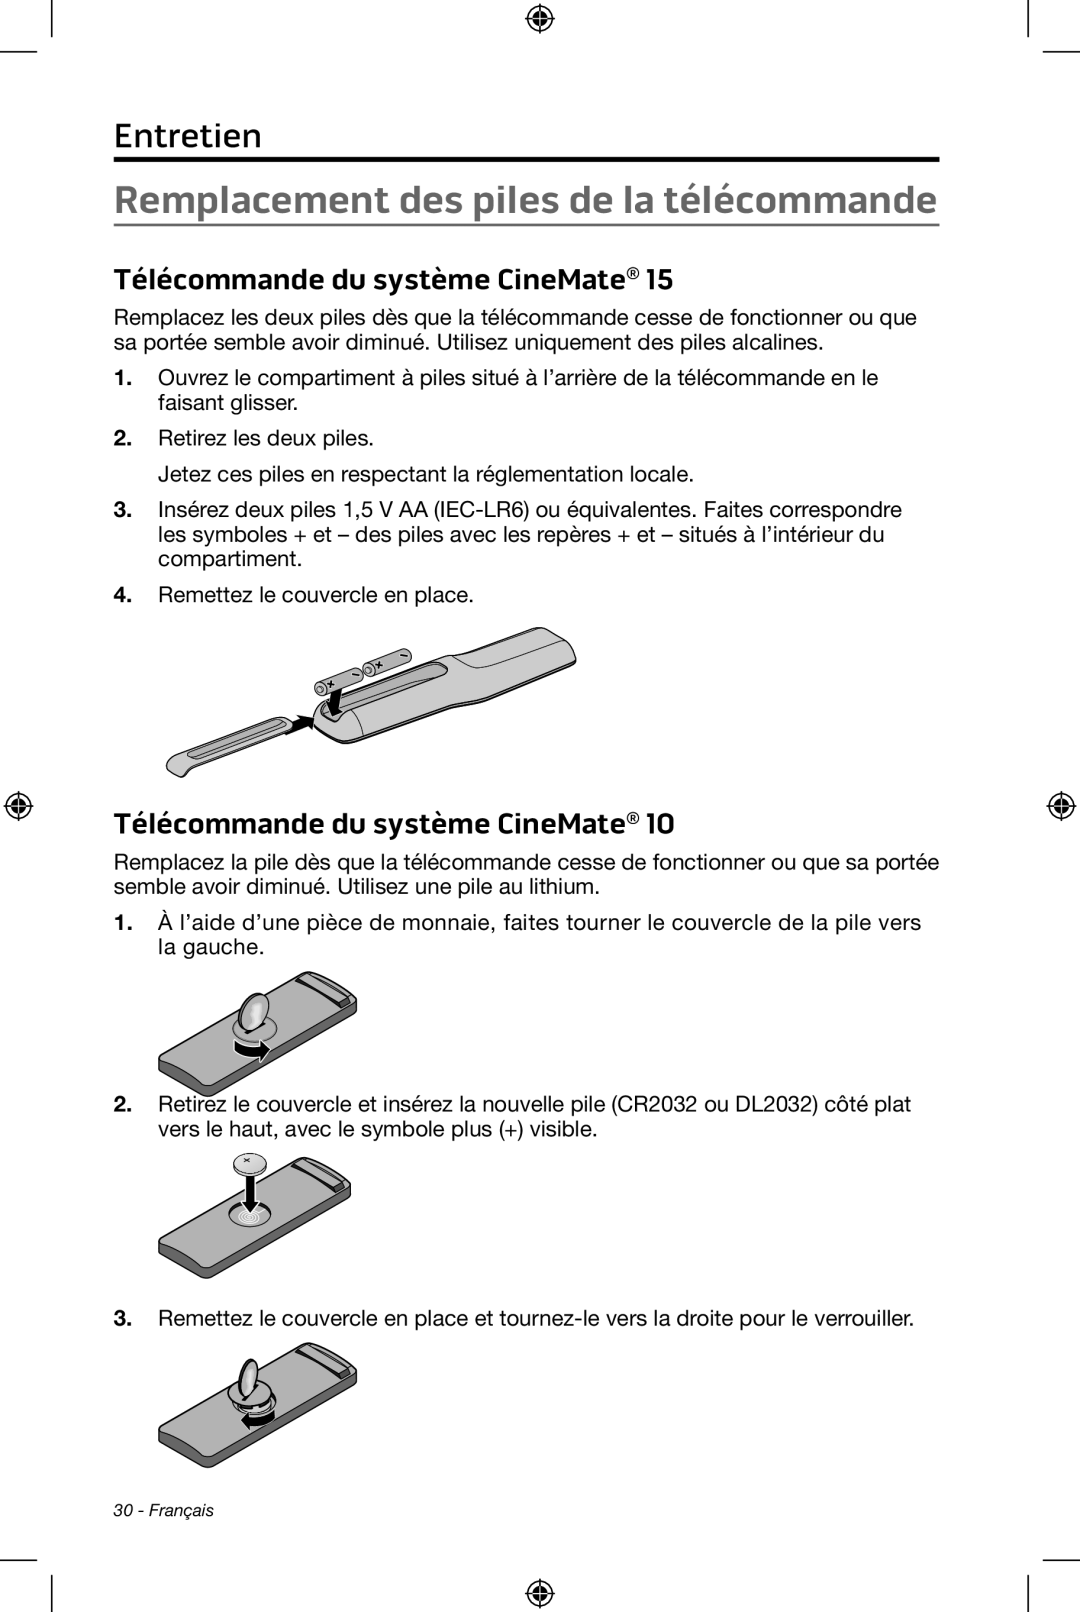 Bose CineMate 15/10 manual Remplacement des piles de la télécommande, Entretien, Télécommande du système CineMate 